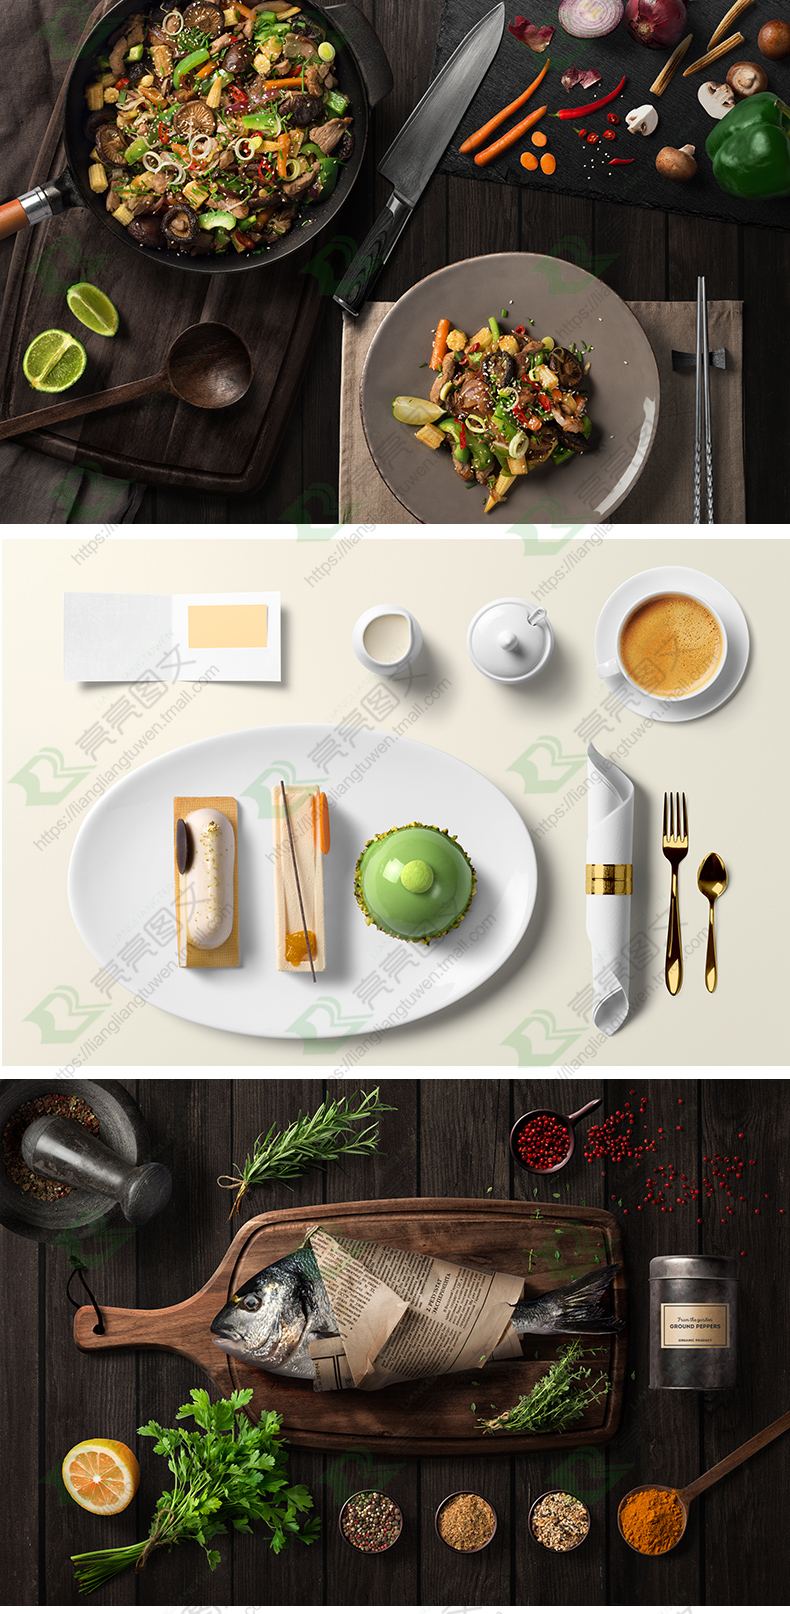 美食餐饮psd分层素材高清图片食物牛排西餐菜单海报广告设计模板